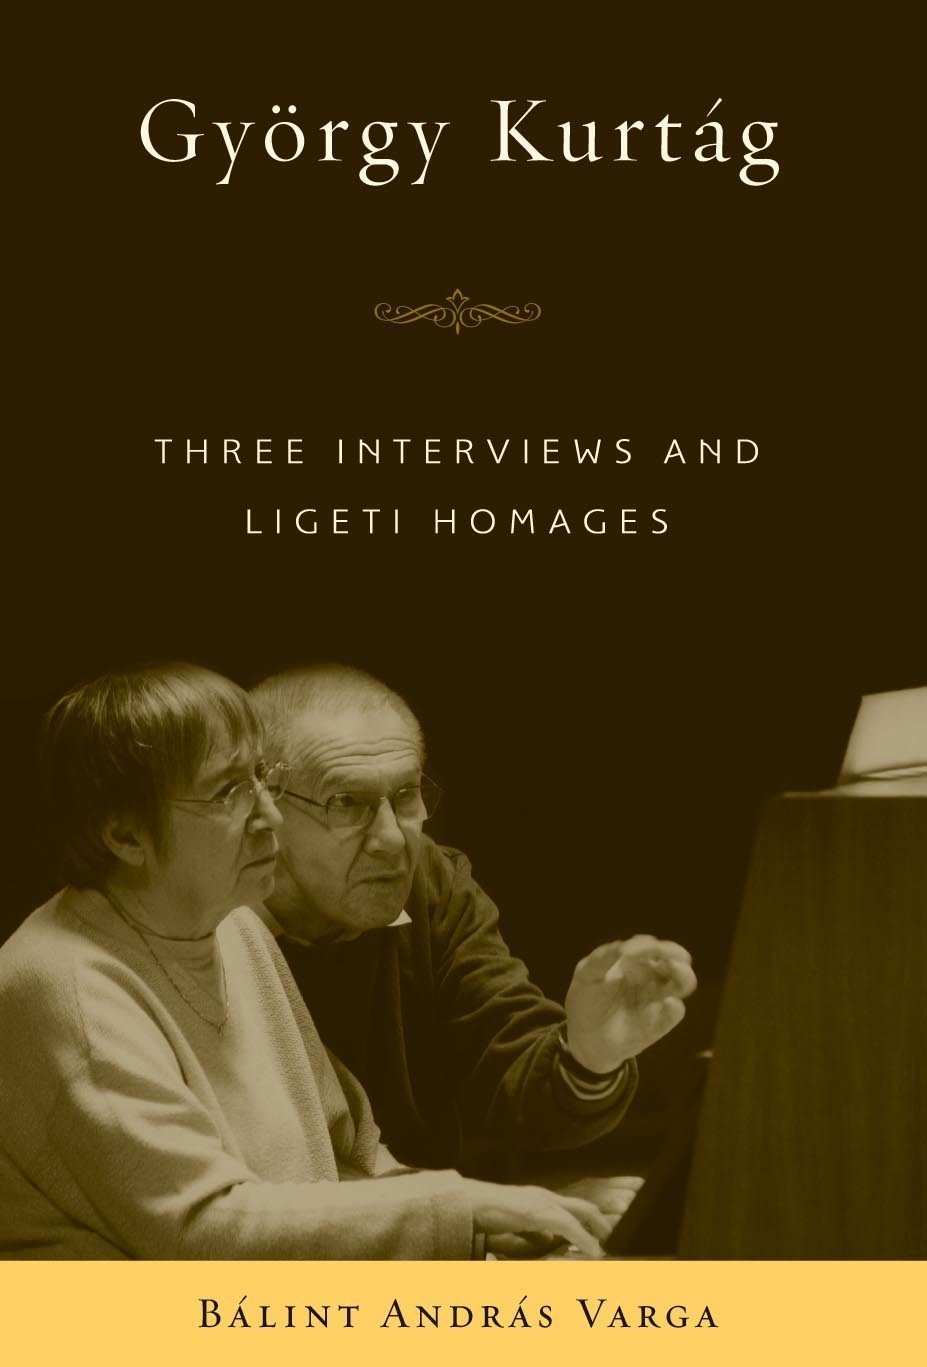 Gyorgy Kurtag: Three Interviews and Ligeti Homages | Balint Andras Varga